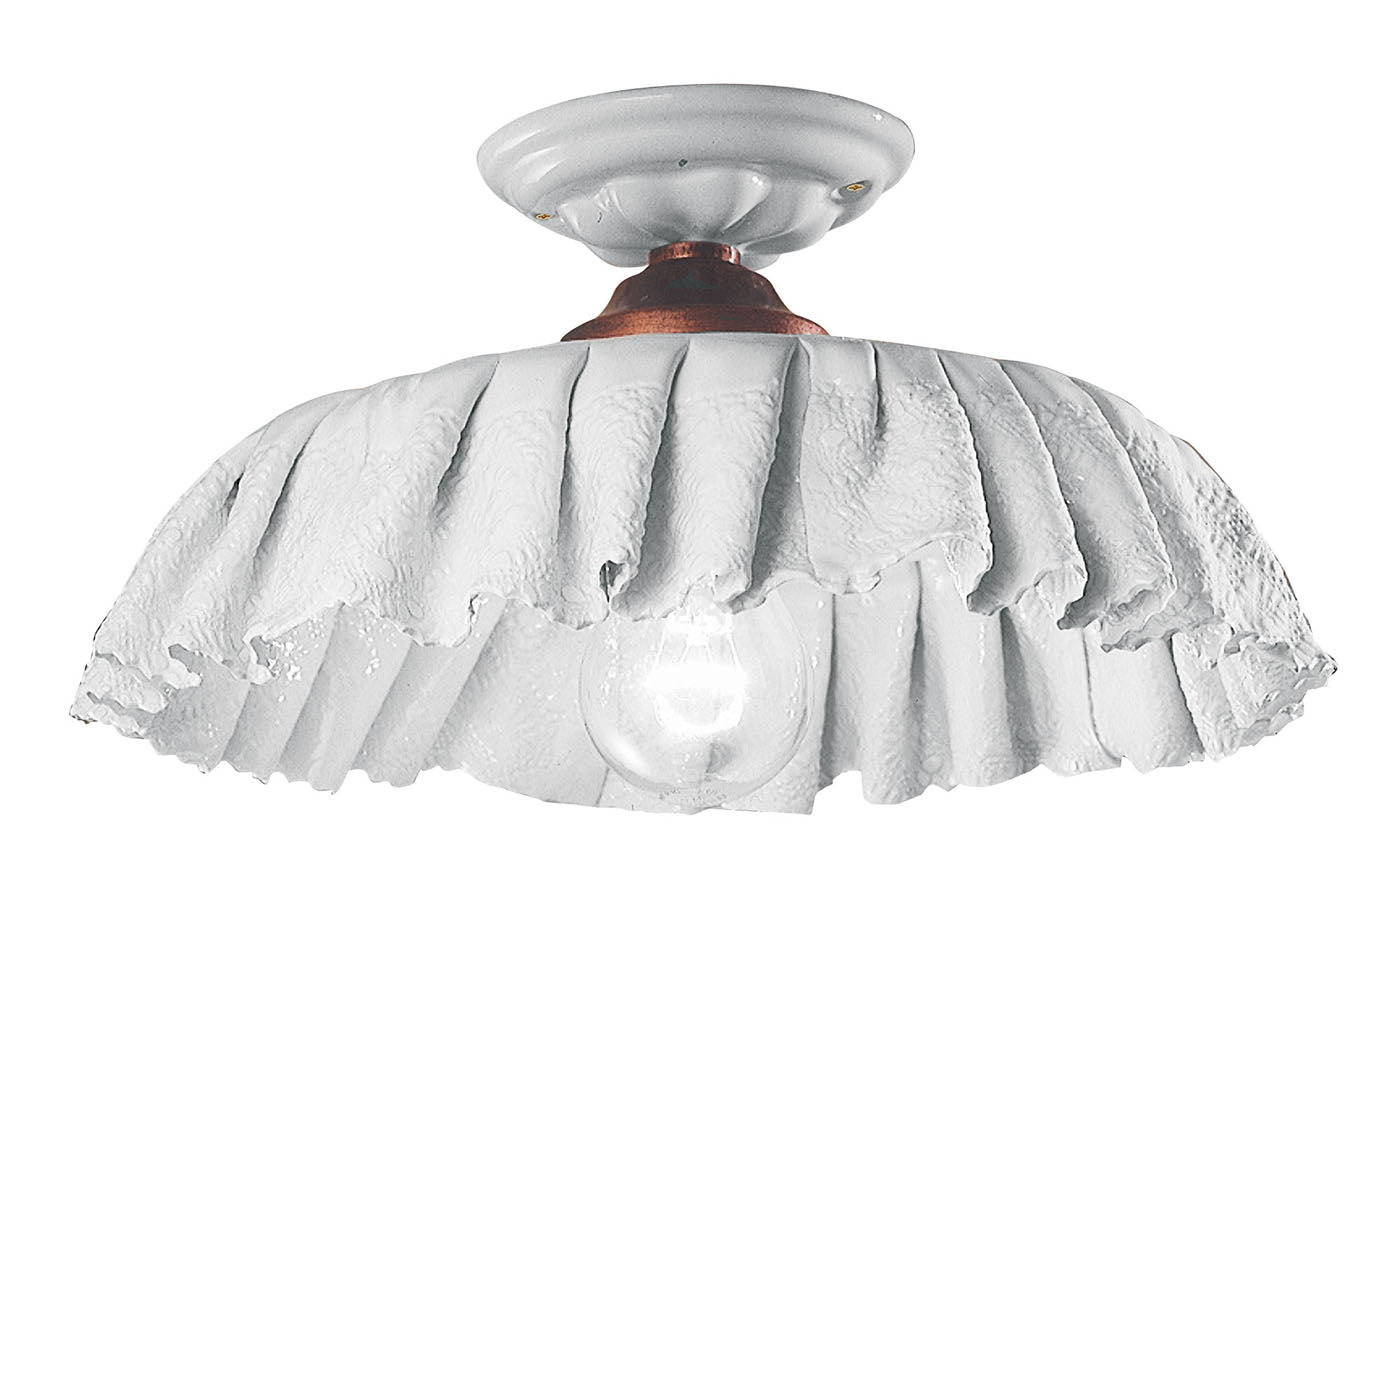 Modena C907, lampada da soffitto a forma di fiore - Vista principale